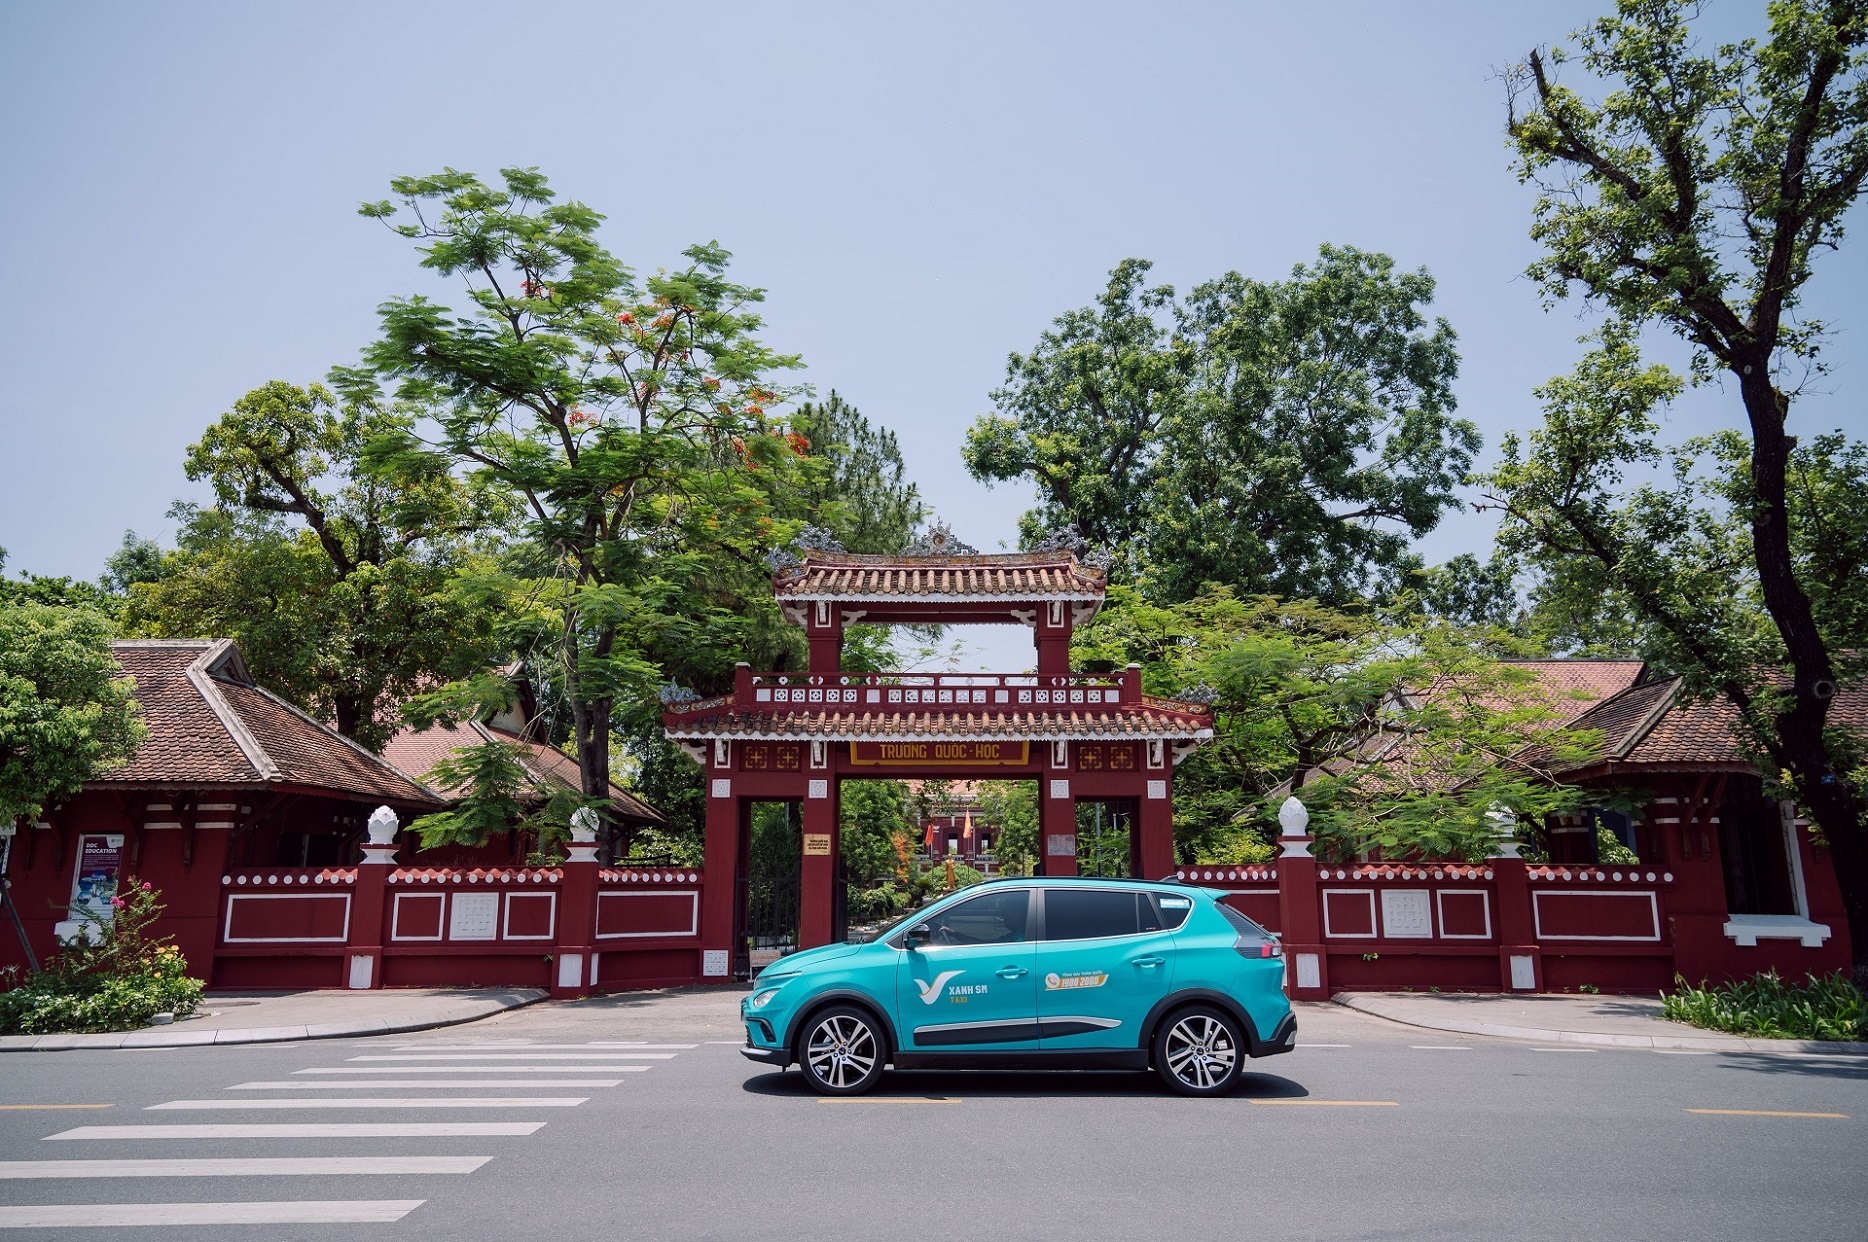 Taxi Xanh SM ra mắt tại Huế, ưu đãi lên đến 50% giá trị chuyến đi - Ảnh 2.